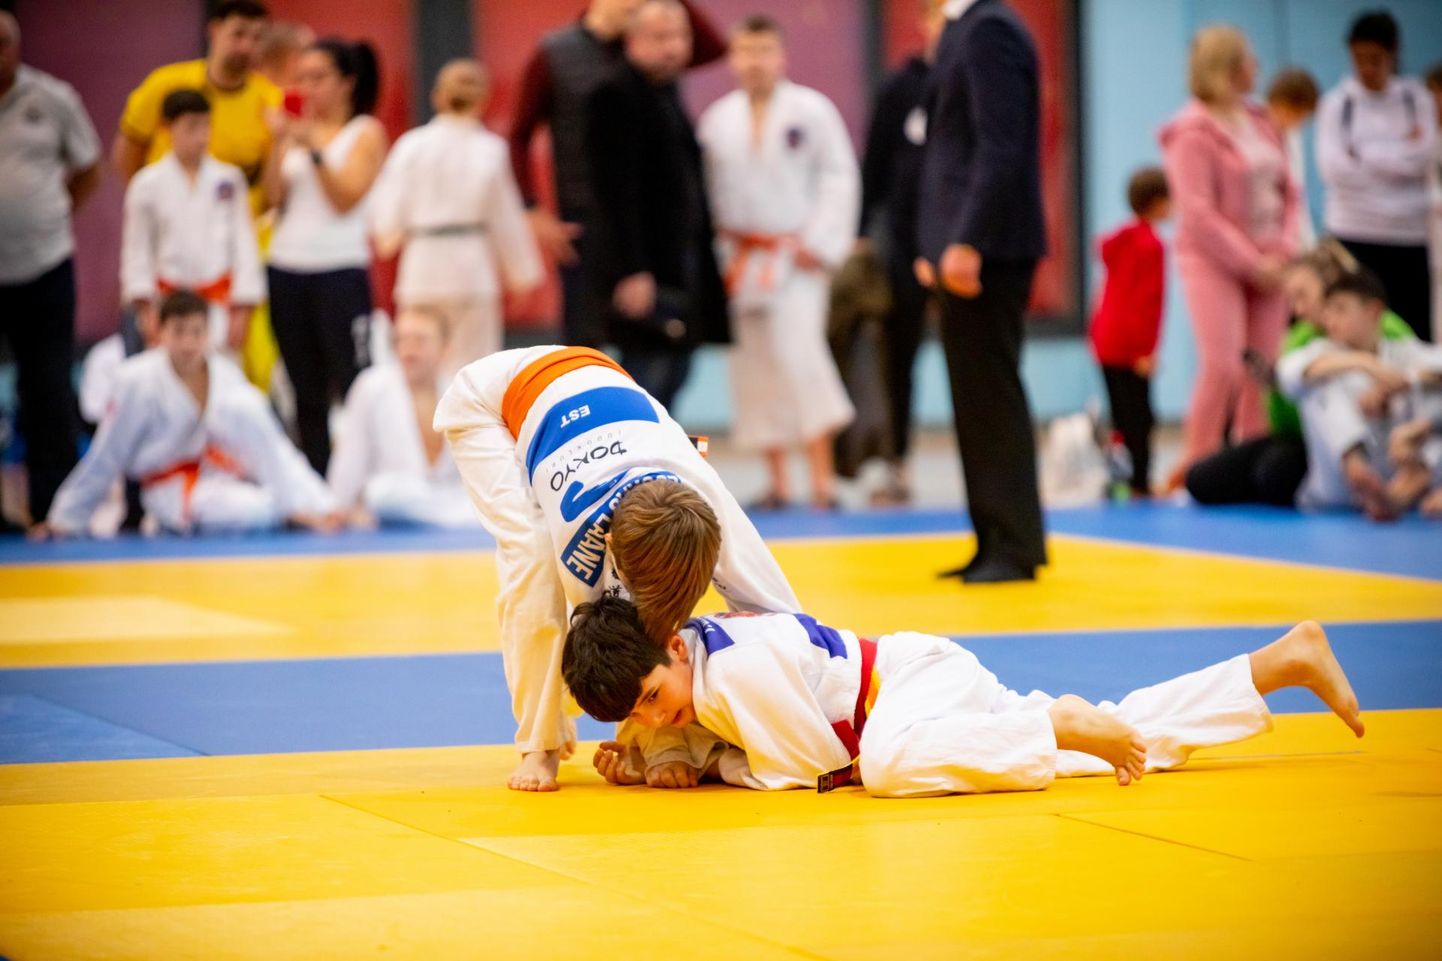 Viimati ehk 29. korda toimus Elva Open mullu 14. jaanuaril hoopis Nõos, kus tatamil käis samuti ligi 300 judokat.